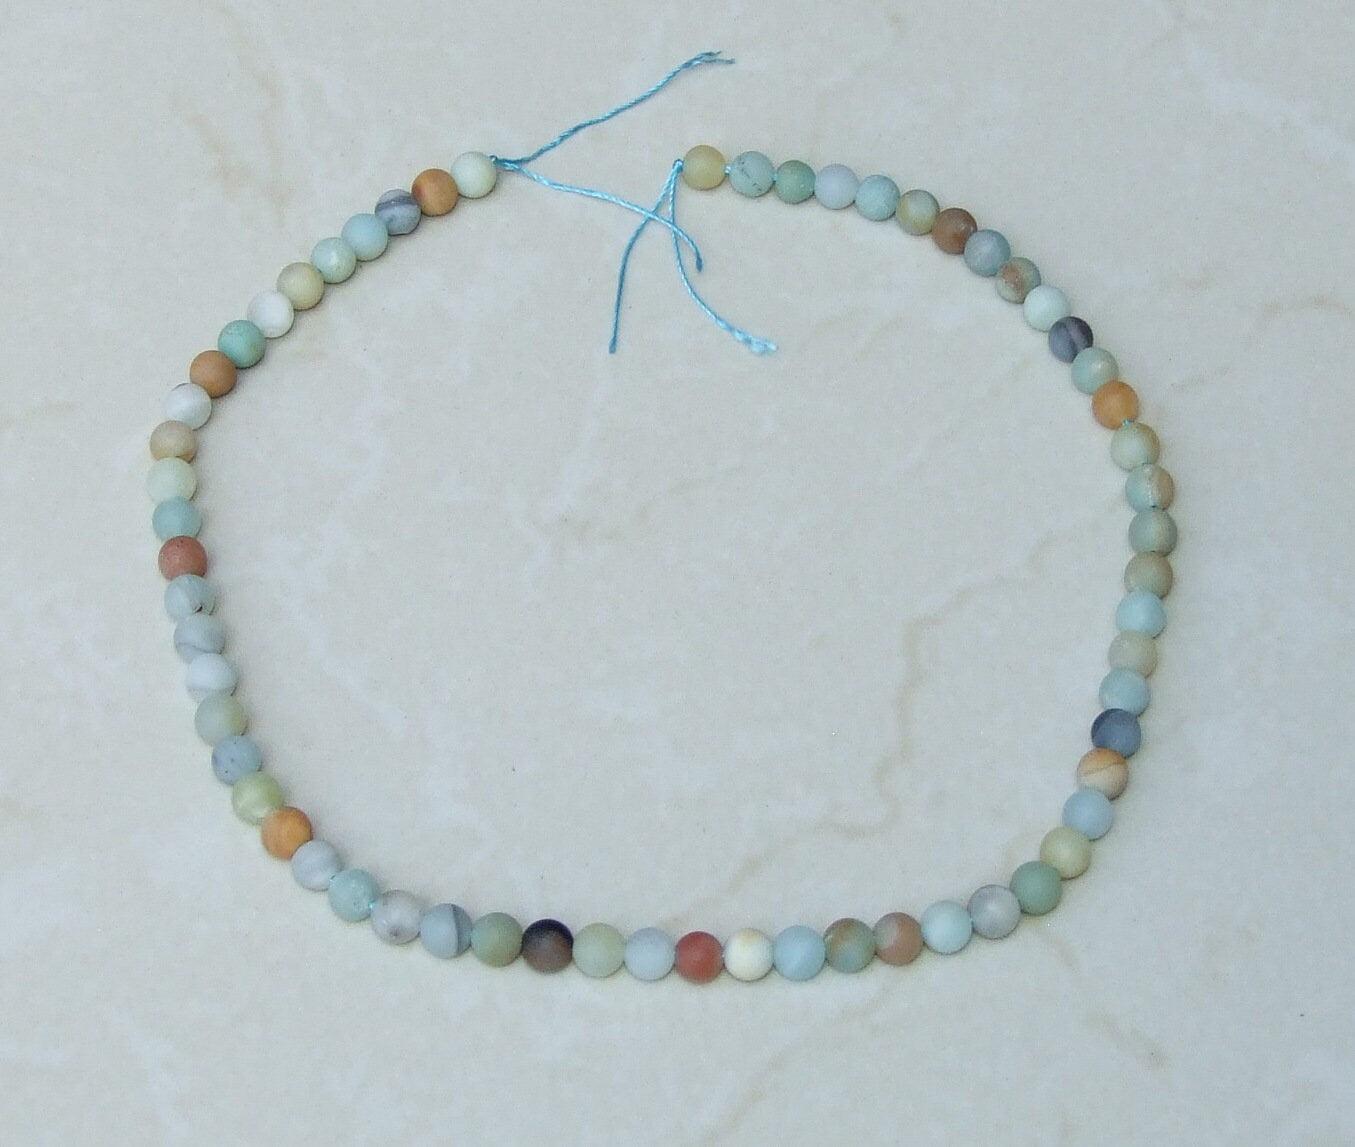 Amazonite Round Matte Beads - Amazonite Beads - Round Beads - Frosty Matte Finish - Full Strand - Gemstone Beads - Jewelry Stones - 6mm